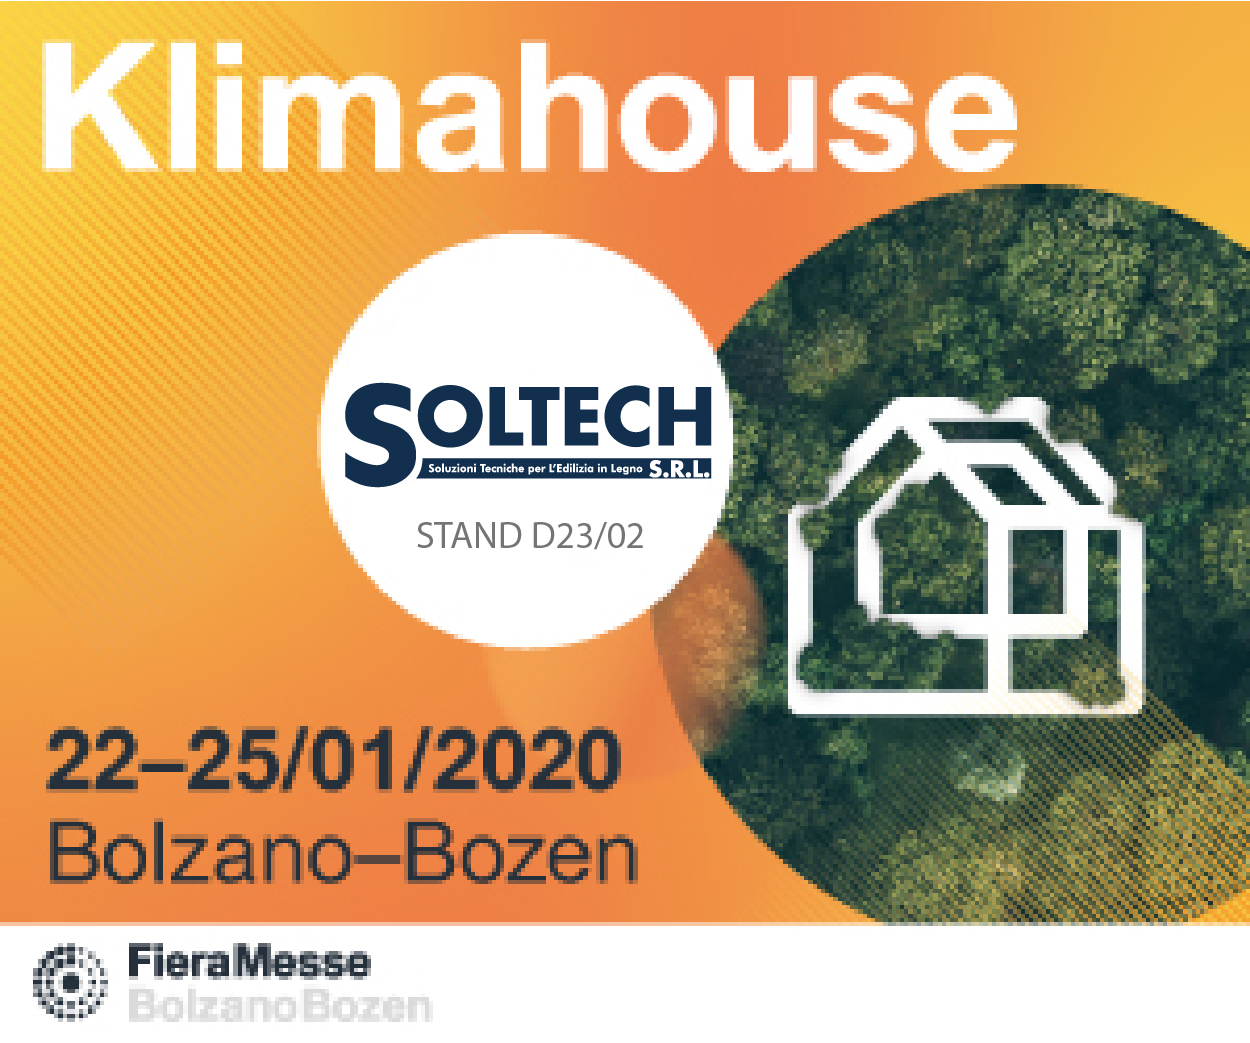 KLIMAHOUSE 2020 Soltech